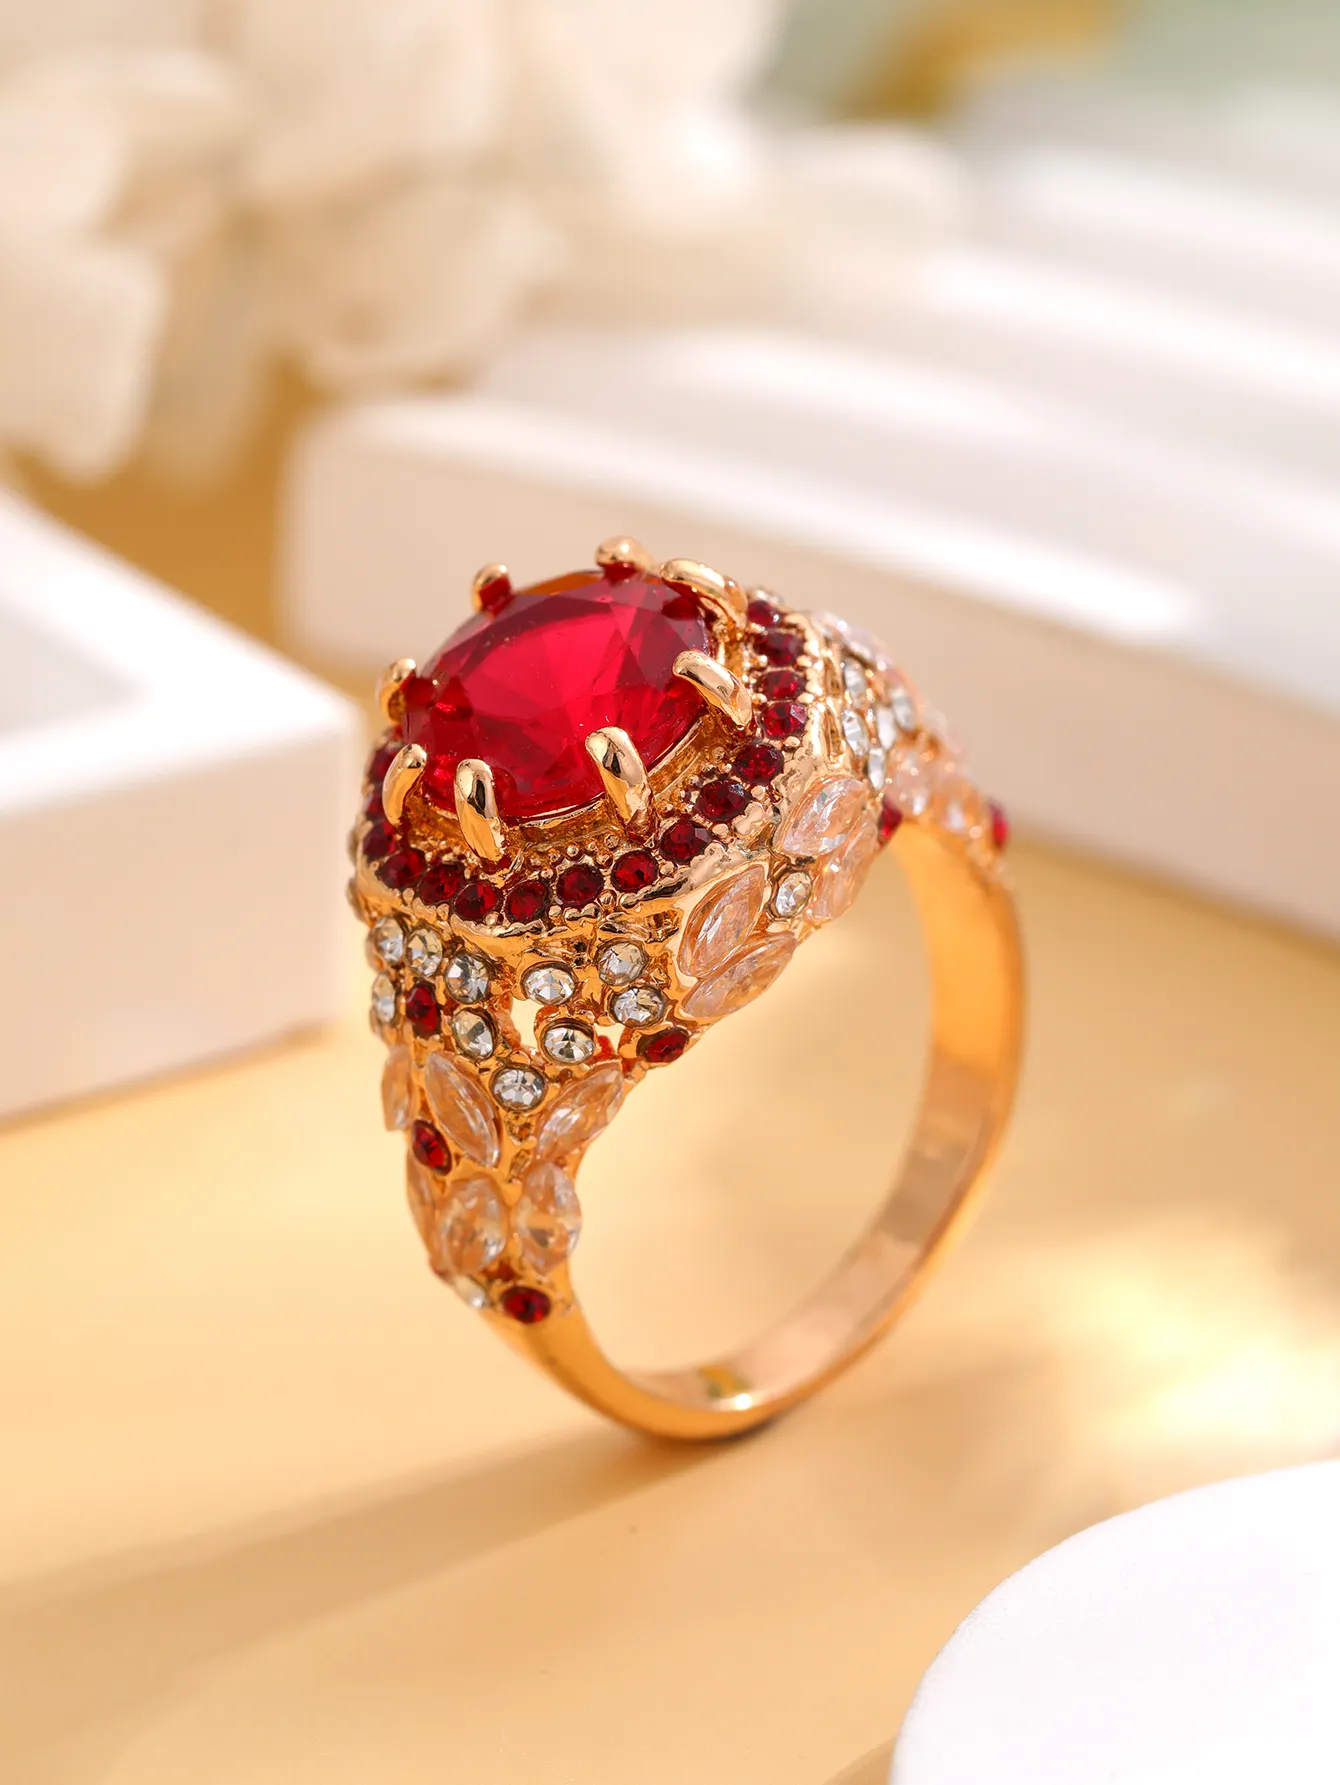 쥬얼리 패션 트렌드 라이트 럭셔리 개성 스타일 레드 지르콘 다이아몬드 18k 여성용 바로크 반지